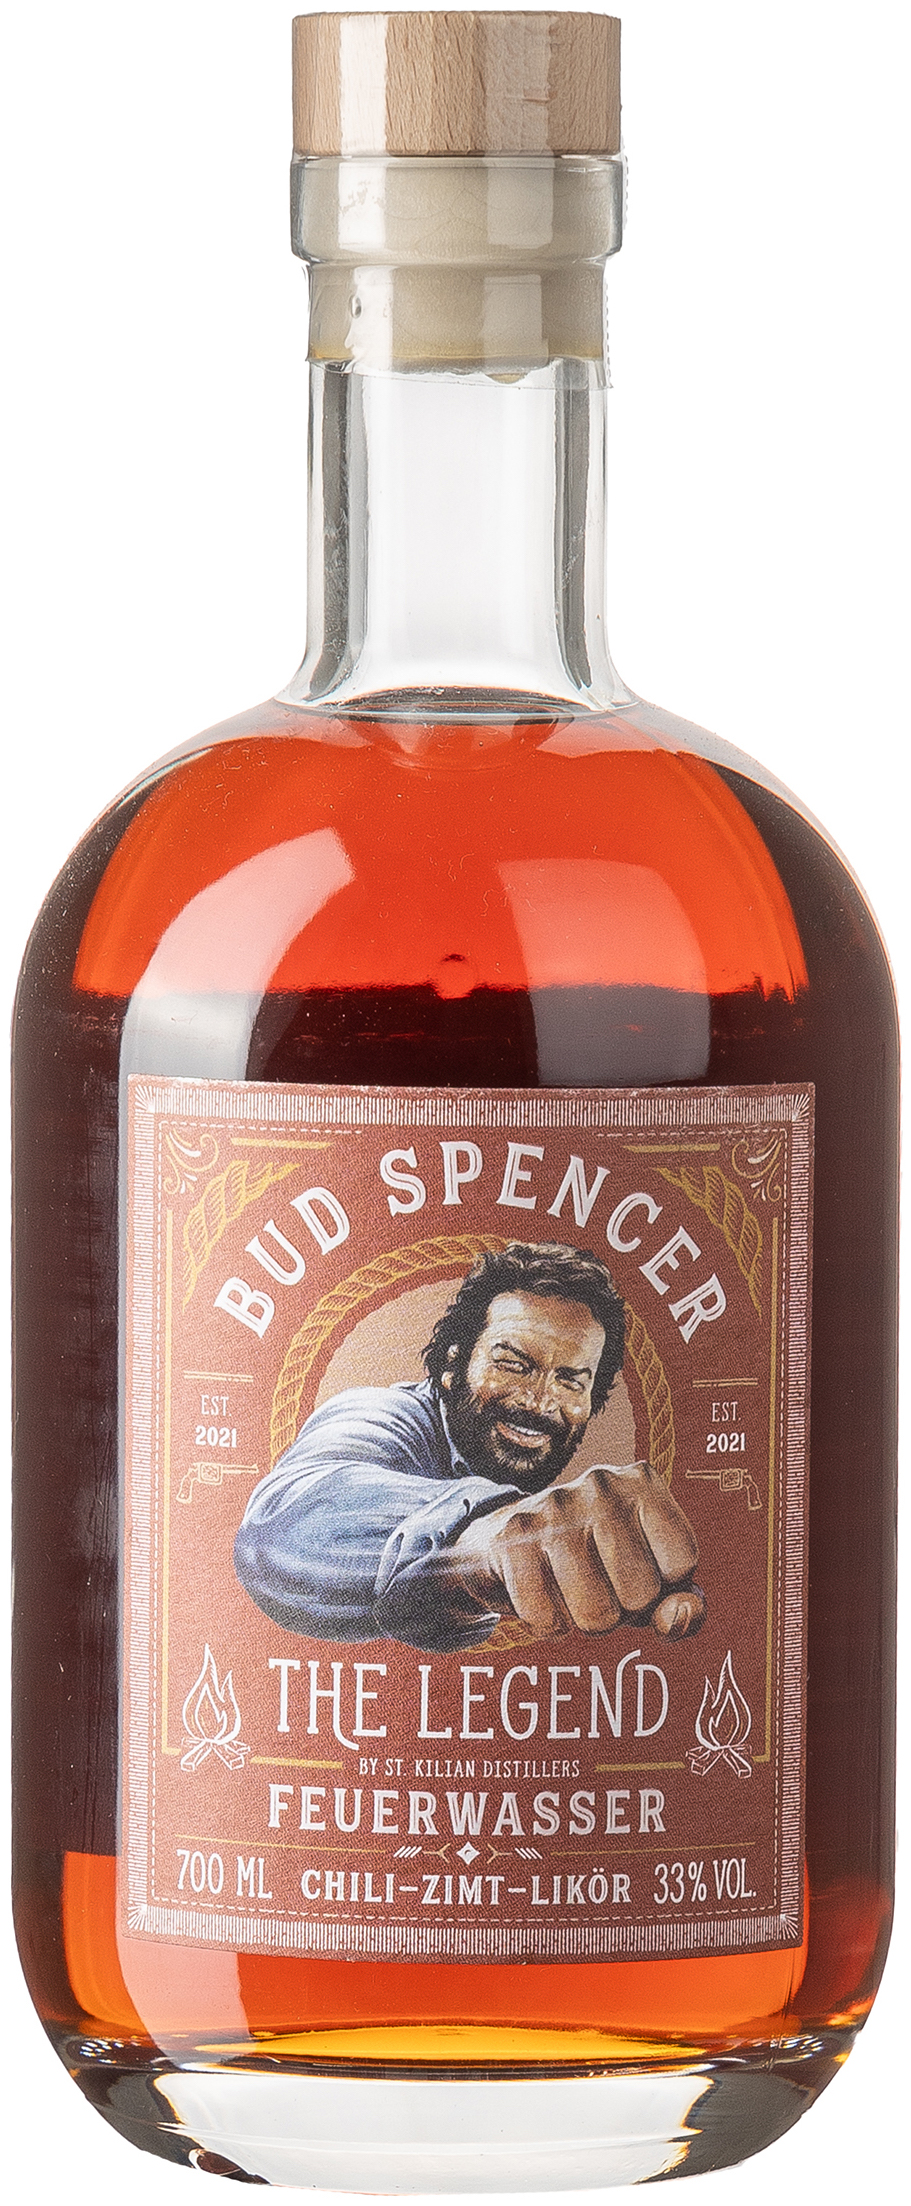 Bud Spencer The Legend Feuerwasser 33% vol. 0,7L